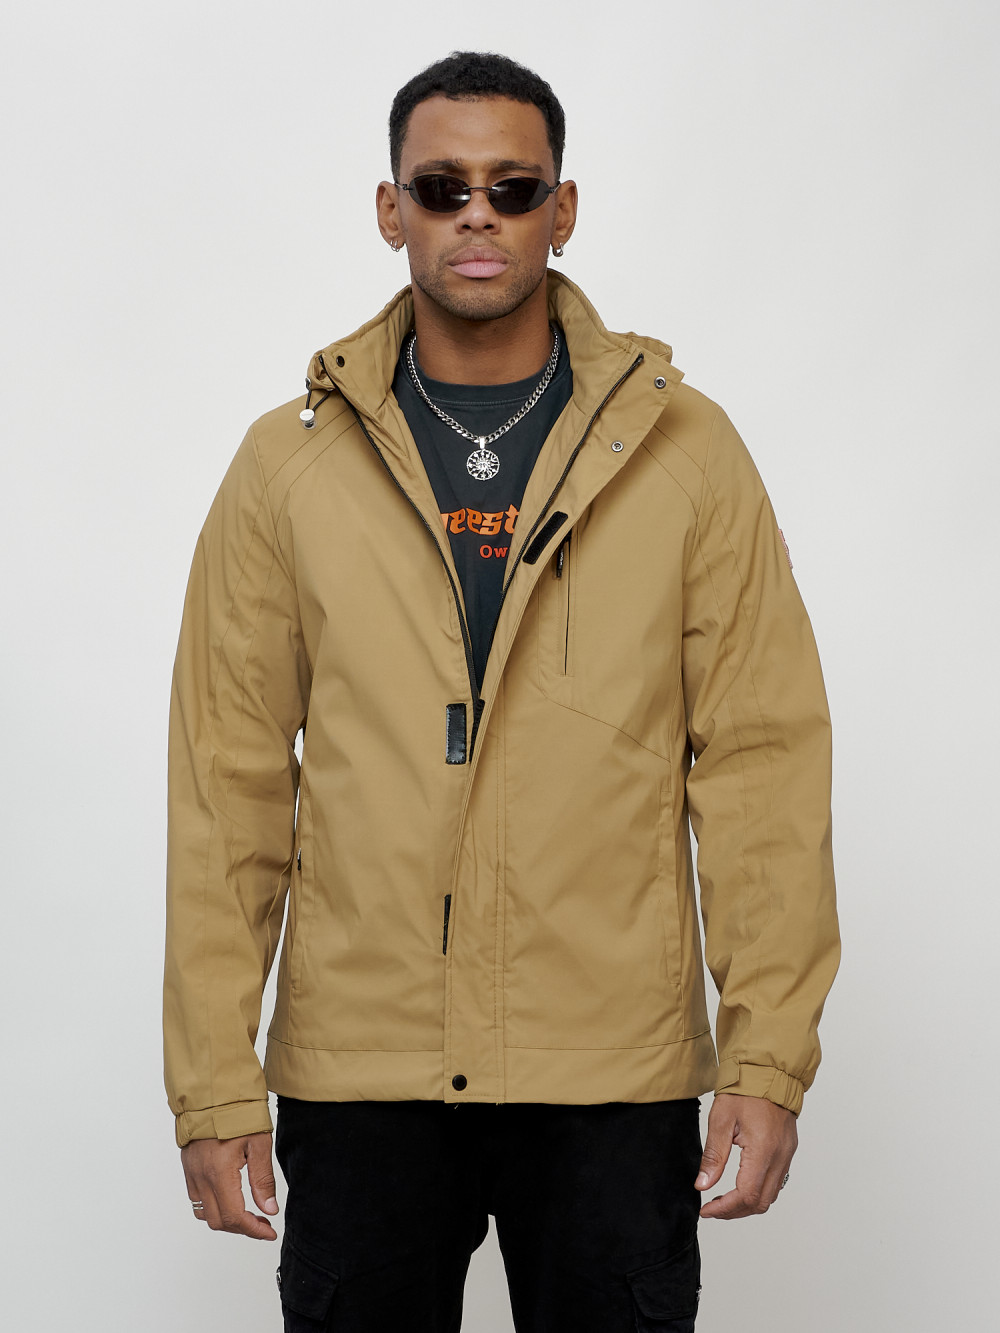 Купить оптом Куртка спортивная мужская весенняя с капюшоном бежевого цвета 88022B в Казани